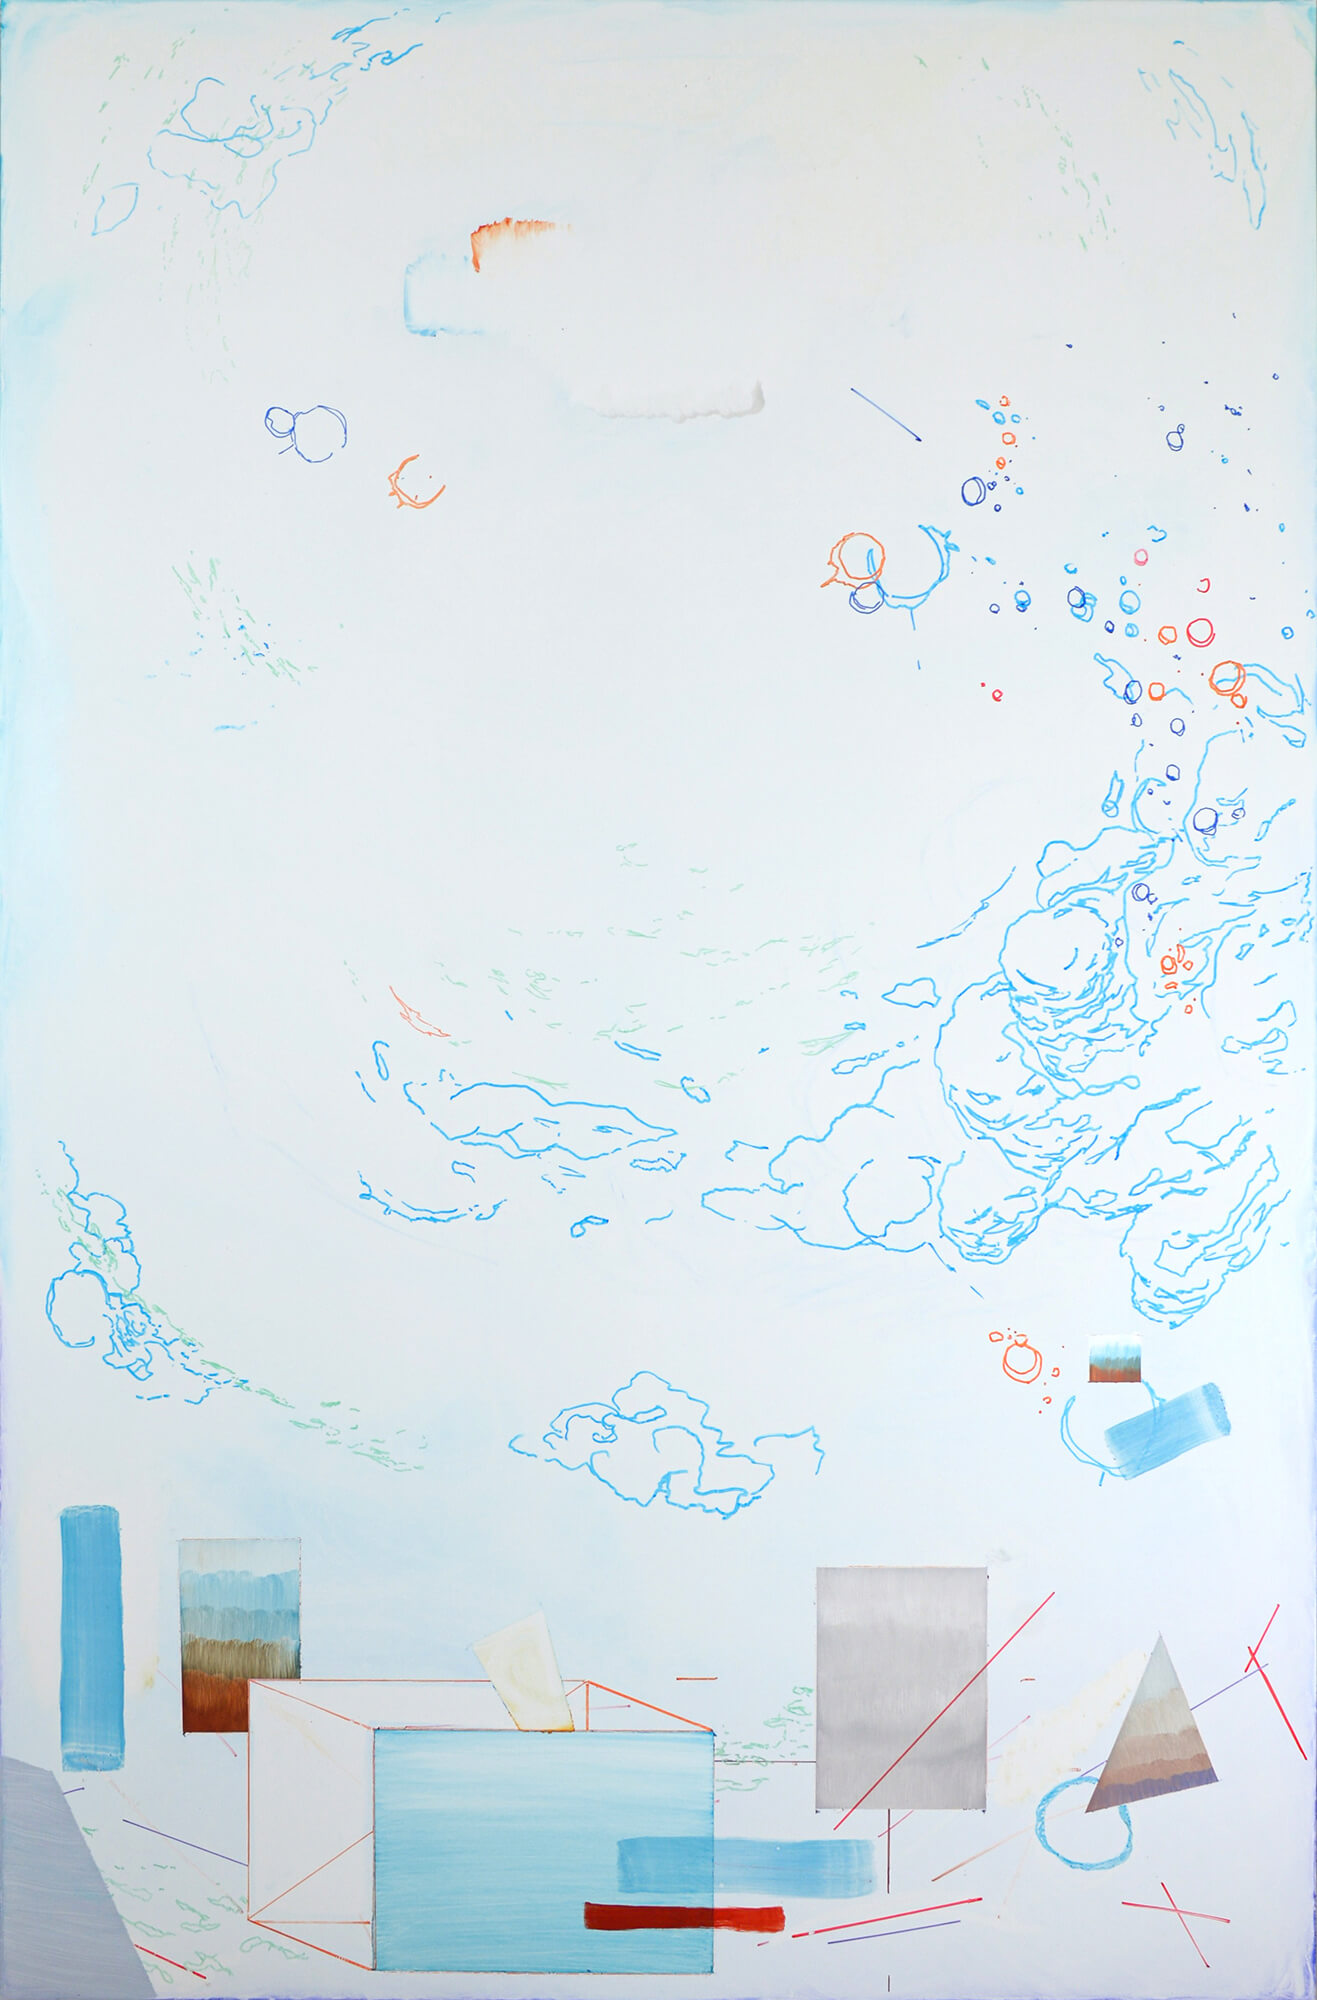 AYNM-REI XI Feutres et huile sur tableau Velleda 120 x 180 cm 2021 oeuvre réalisée lors de la residence Horizons à la MAGCP